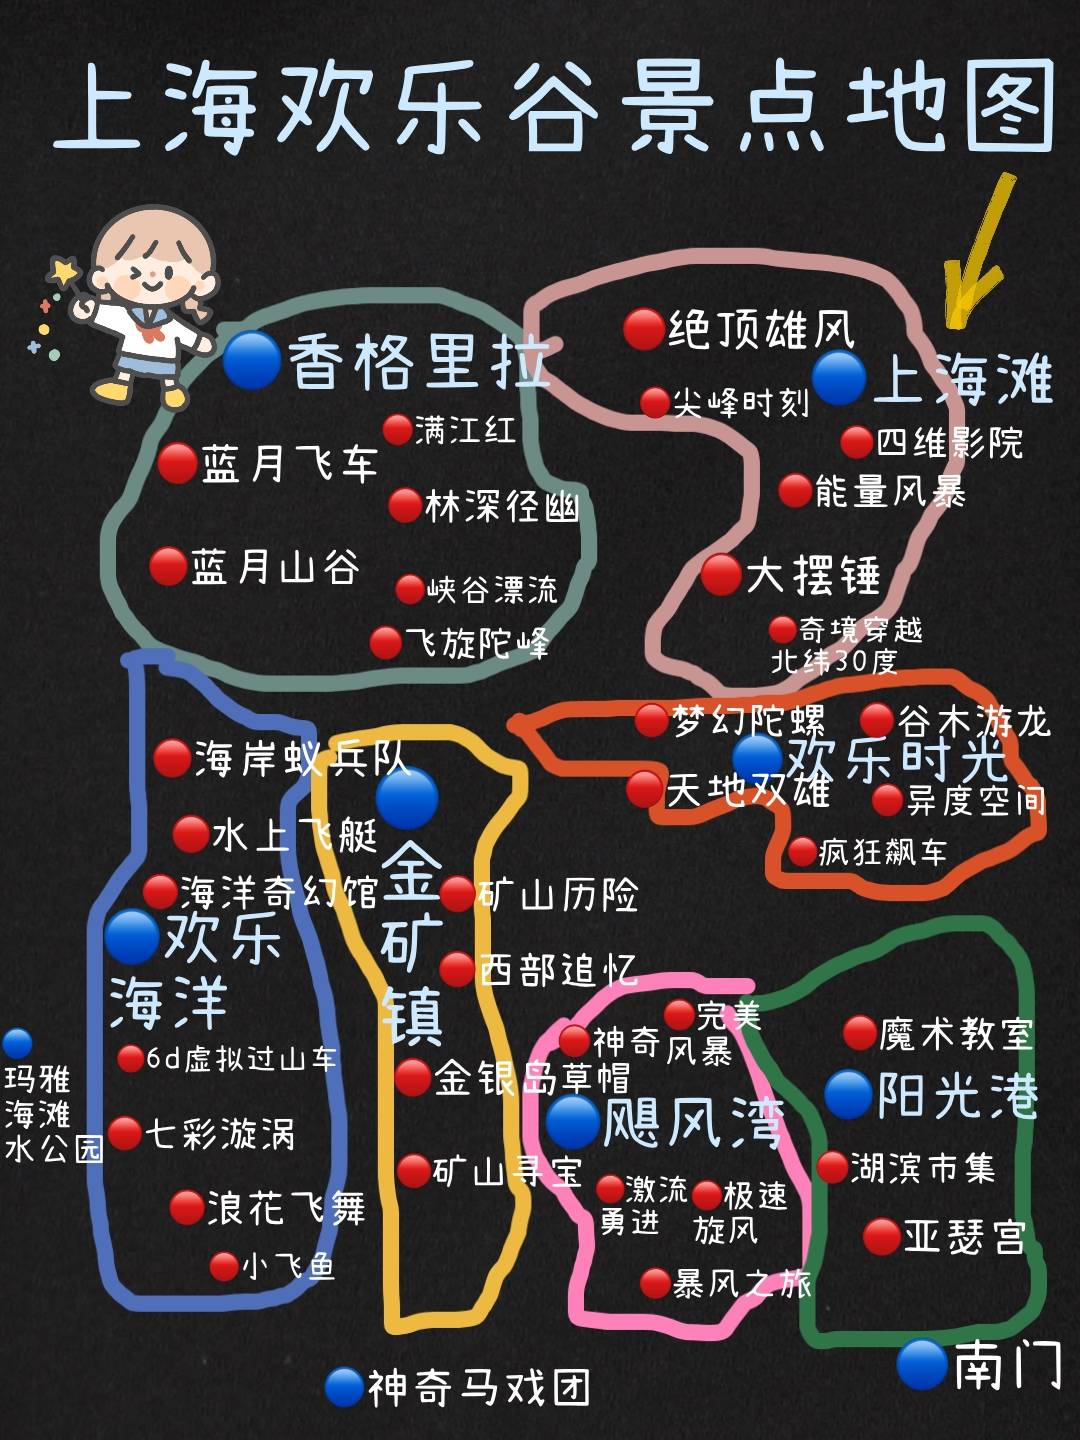 上海欢乐谷超详细攻略来啦伙伴们快来住哦 · 图1上海欢乐谷游玩地图